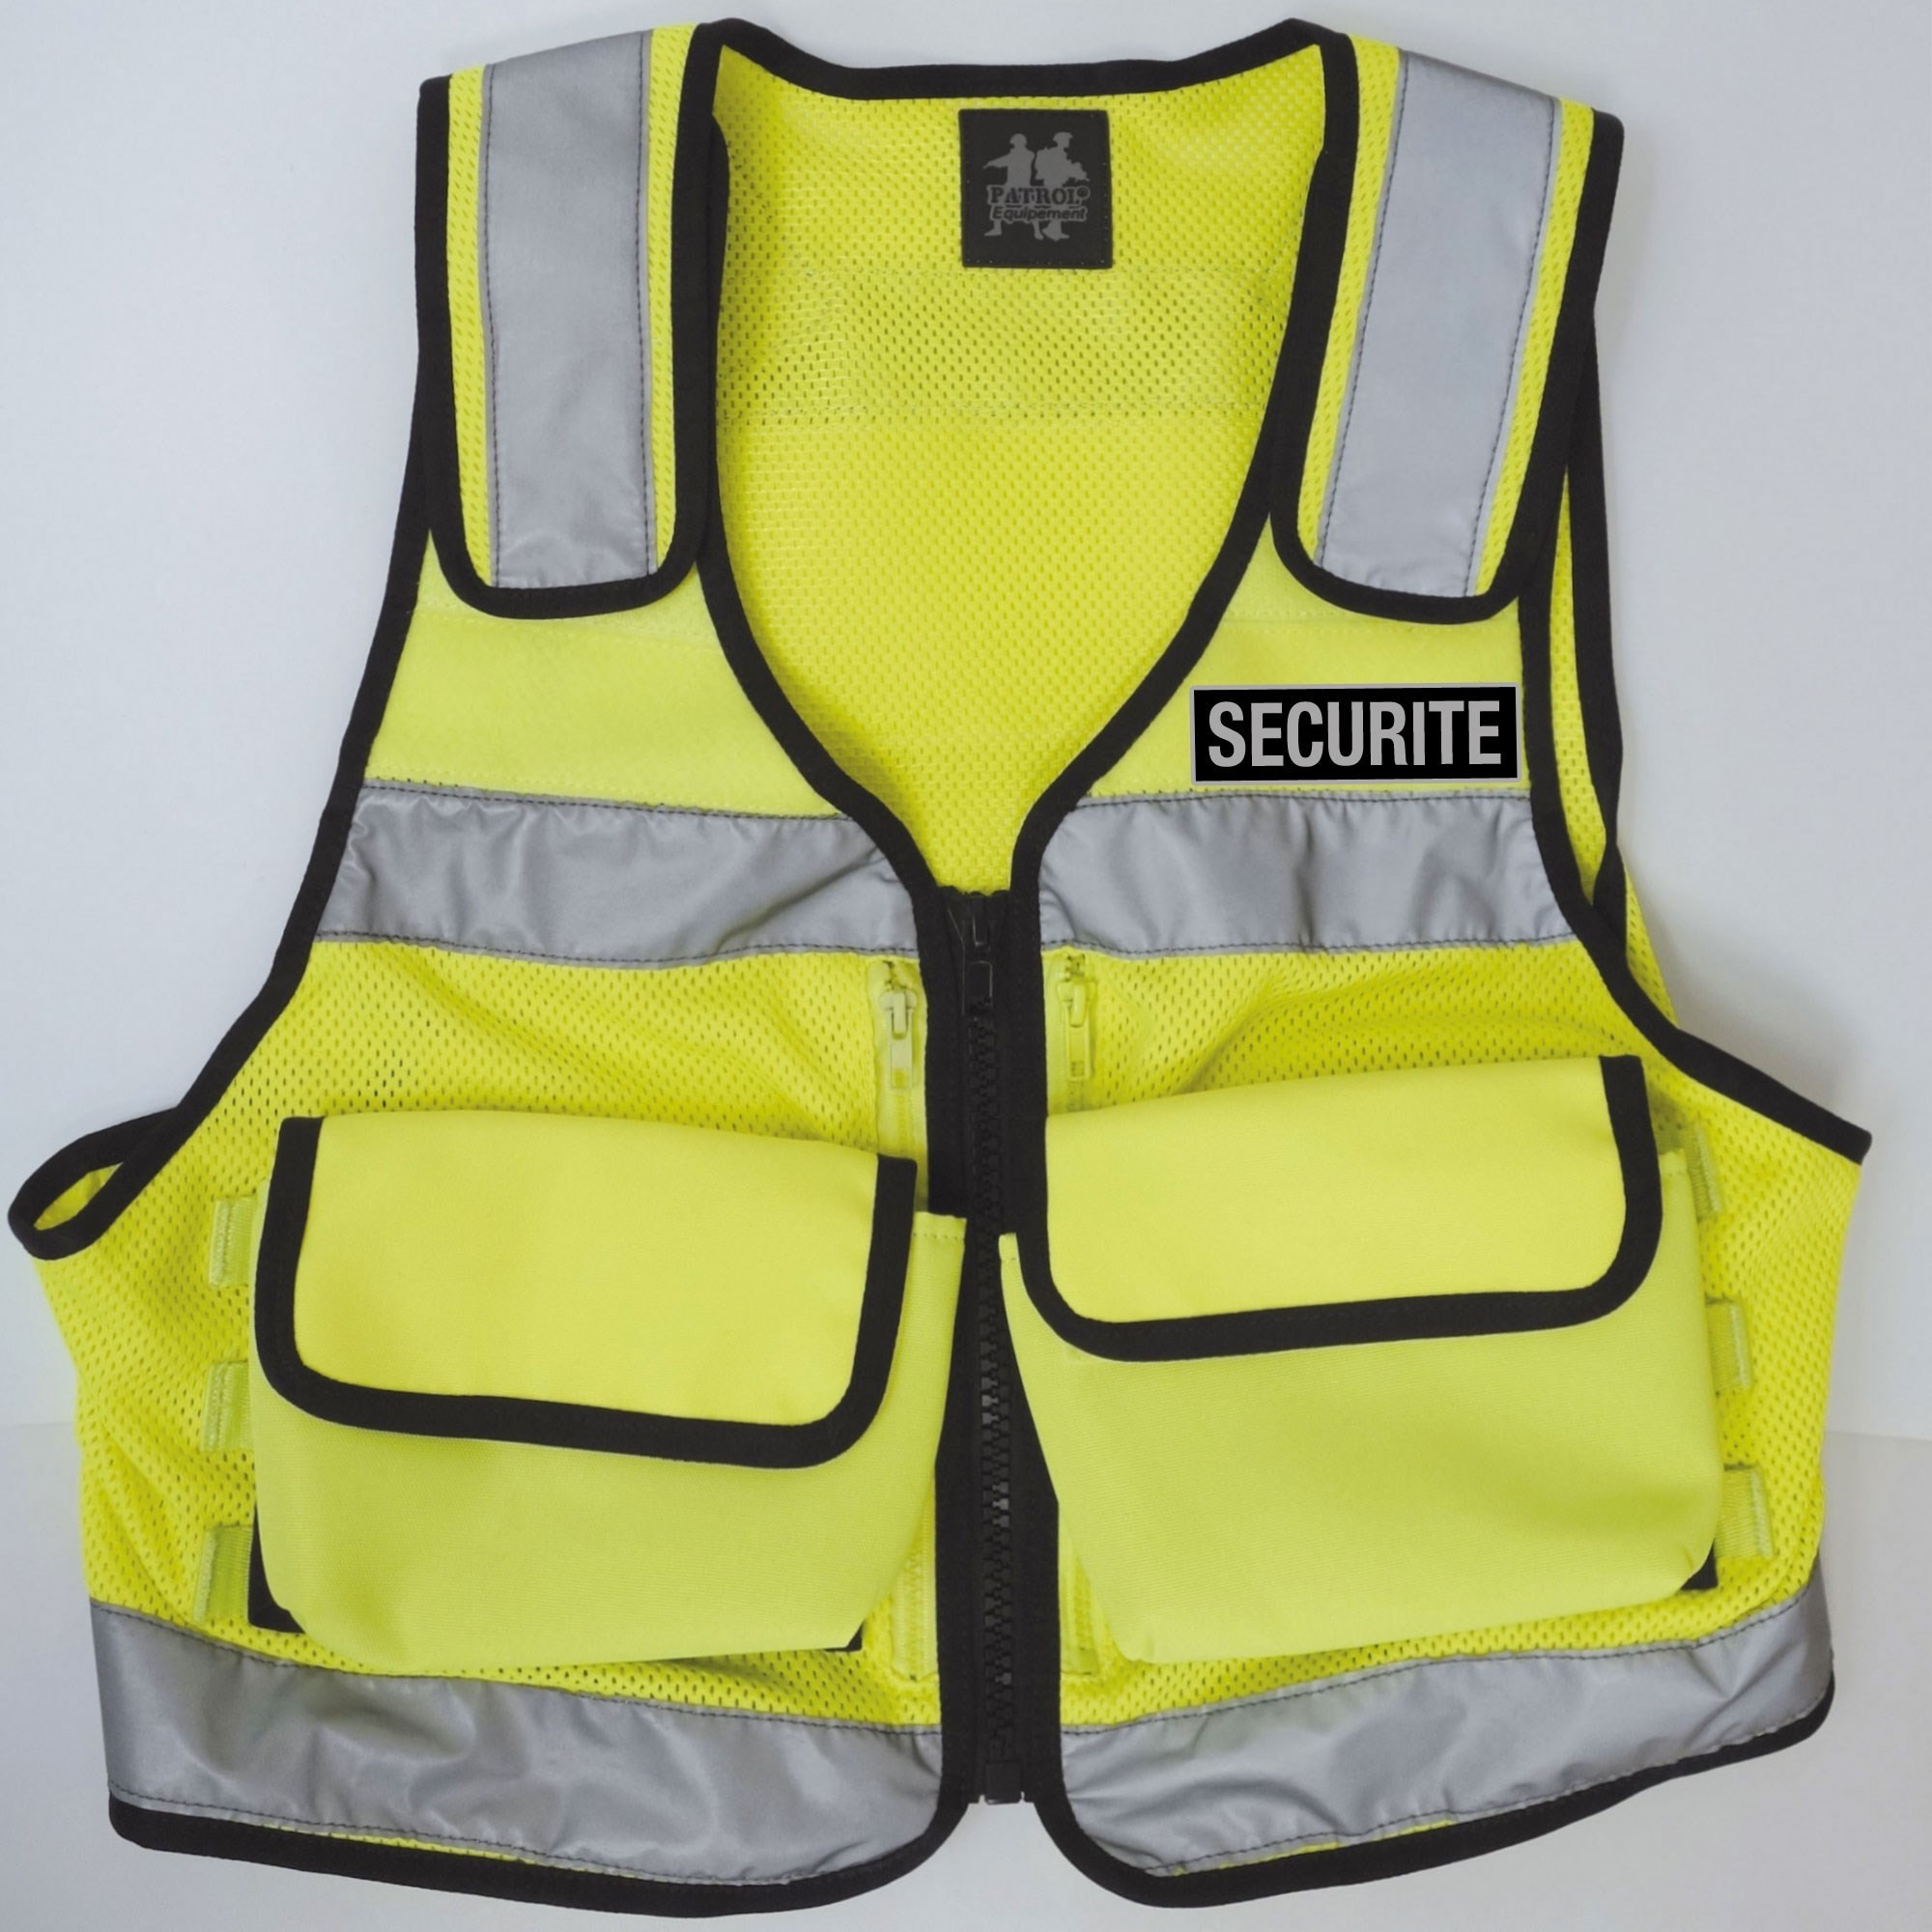 Gilet de sécurité à fermeture AG Haute Visibilité - SECURITE - Jaune Fluo